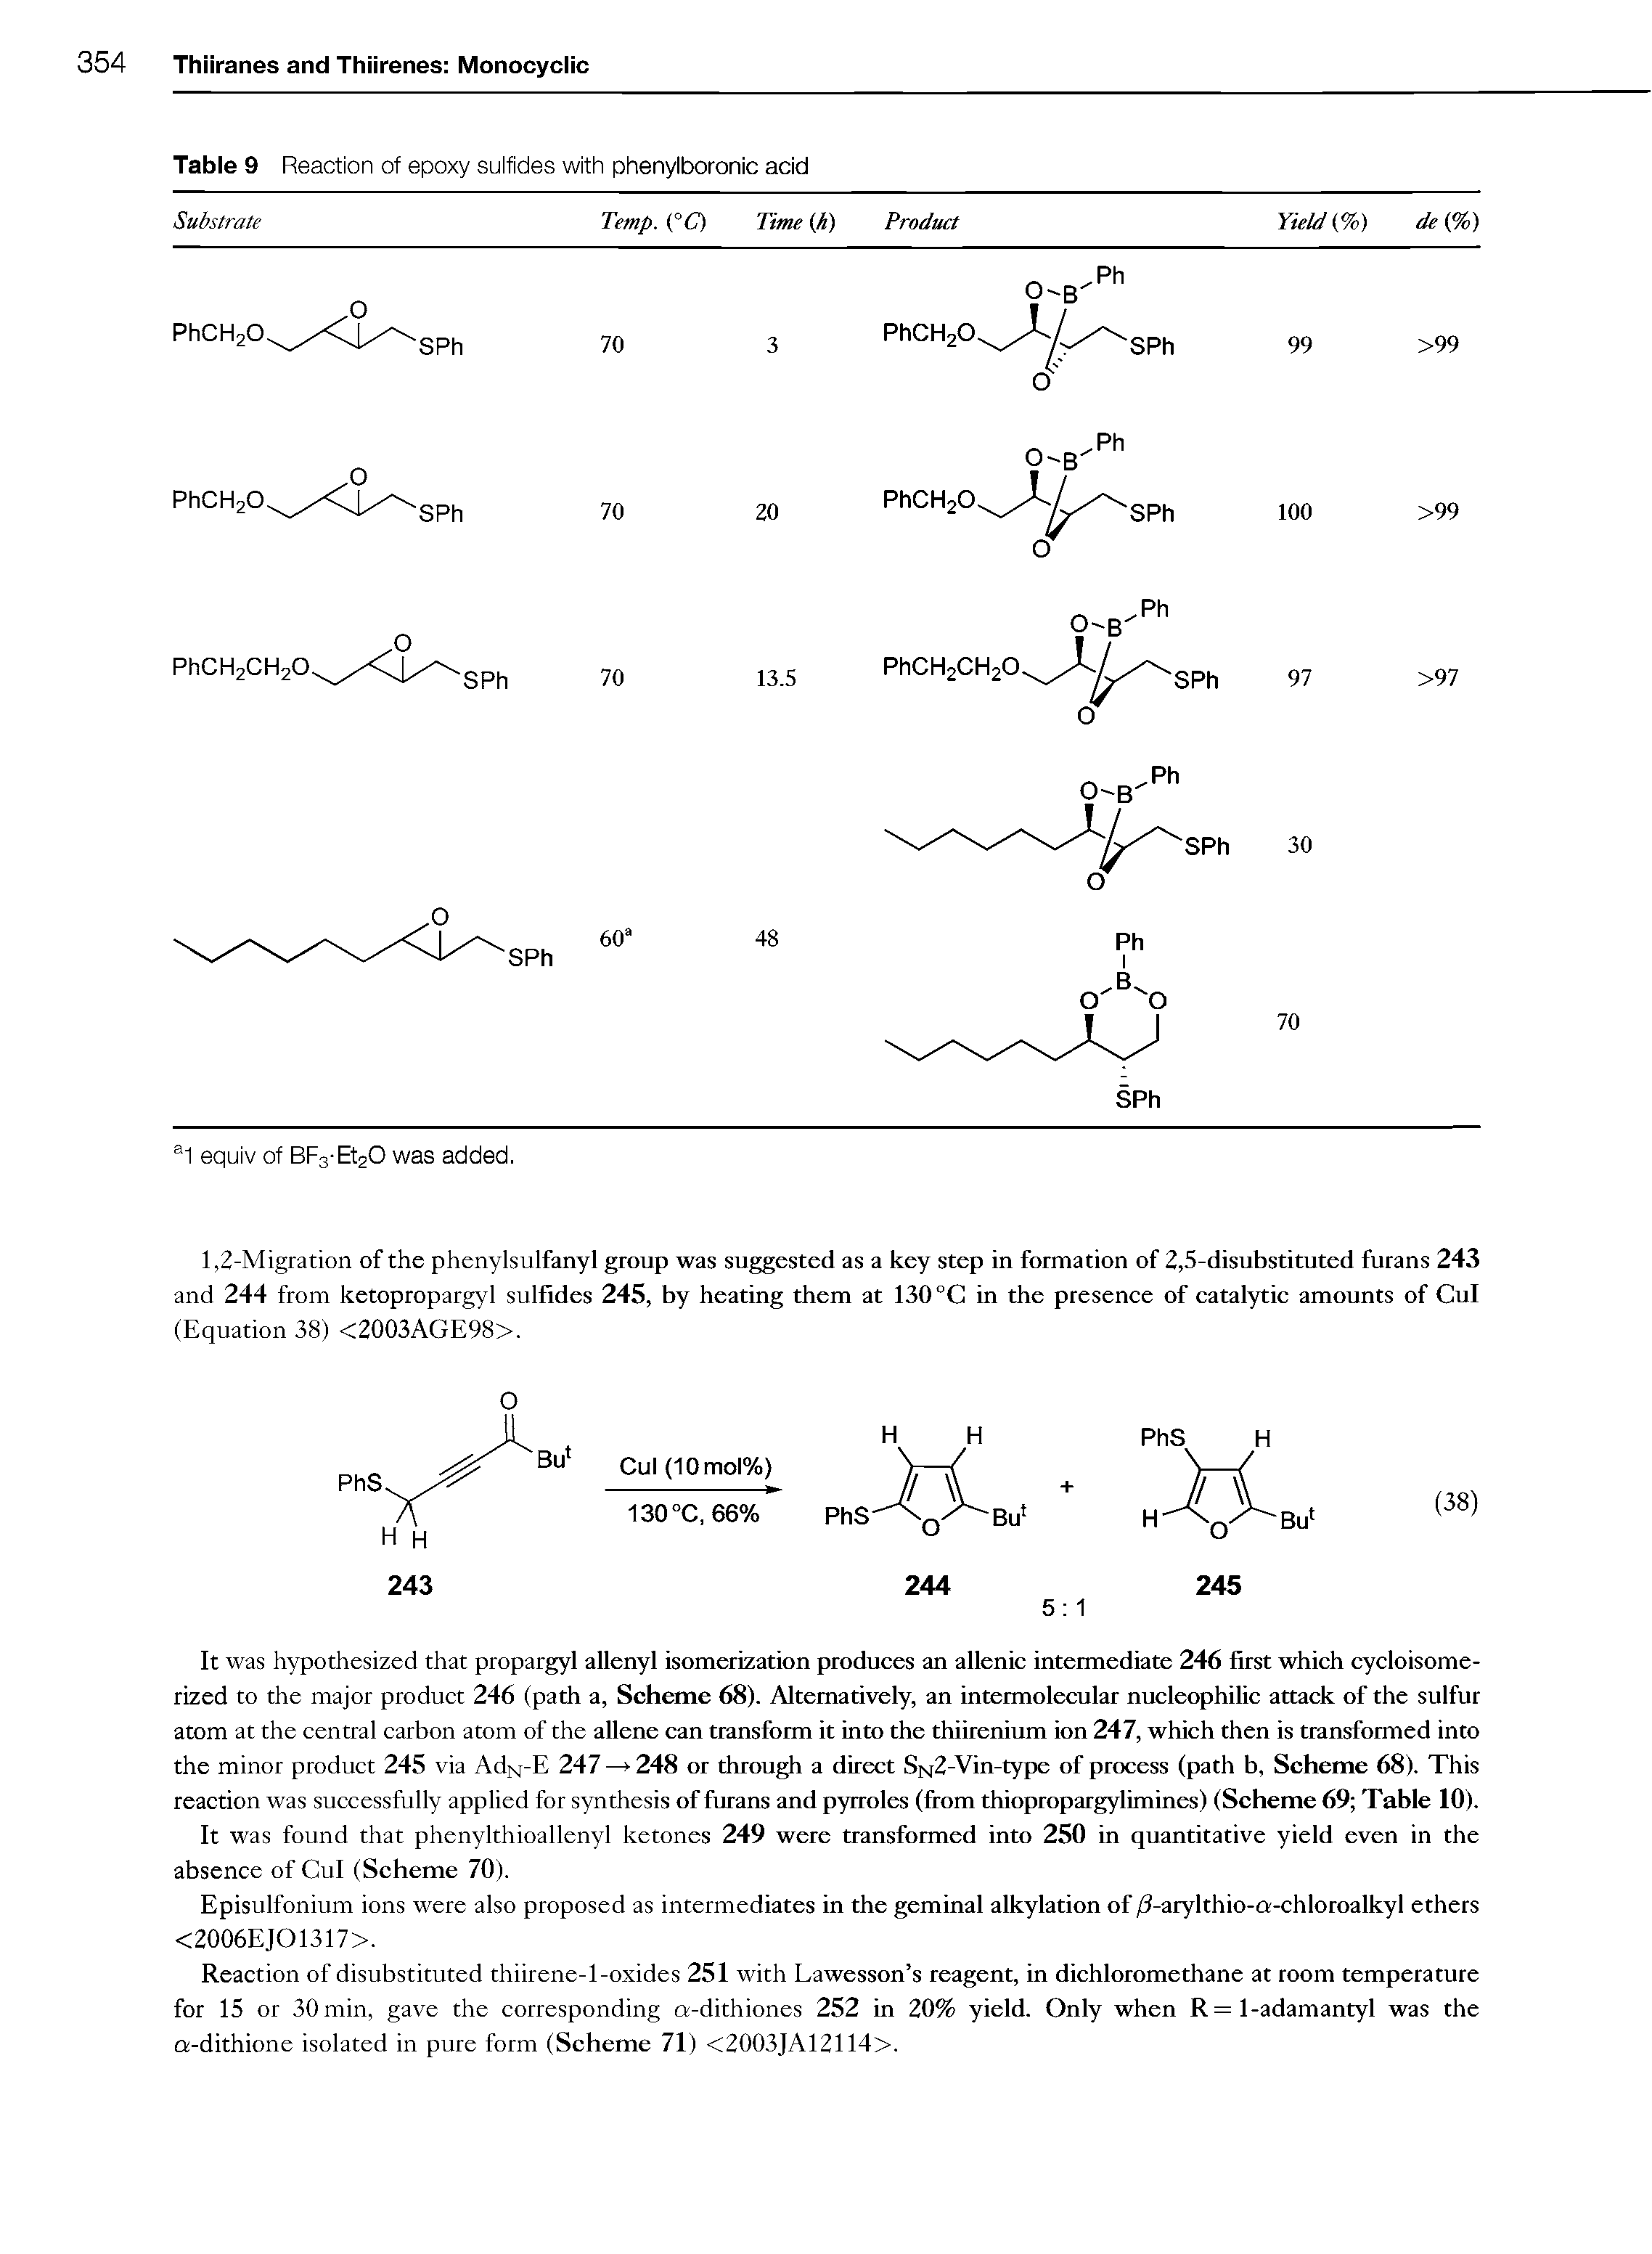 Table 9 Reaction of epoxy sulfides with phenylboronic acid...